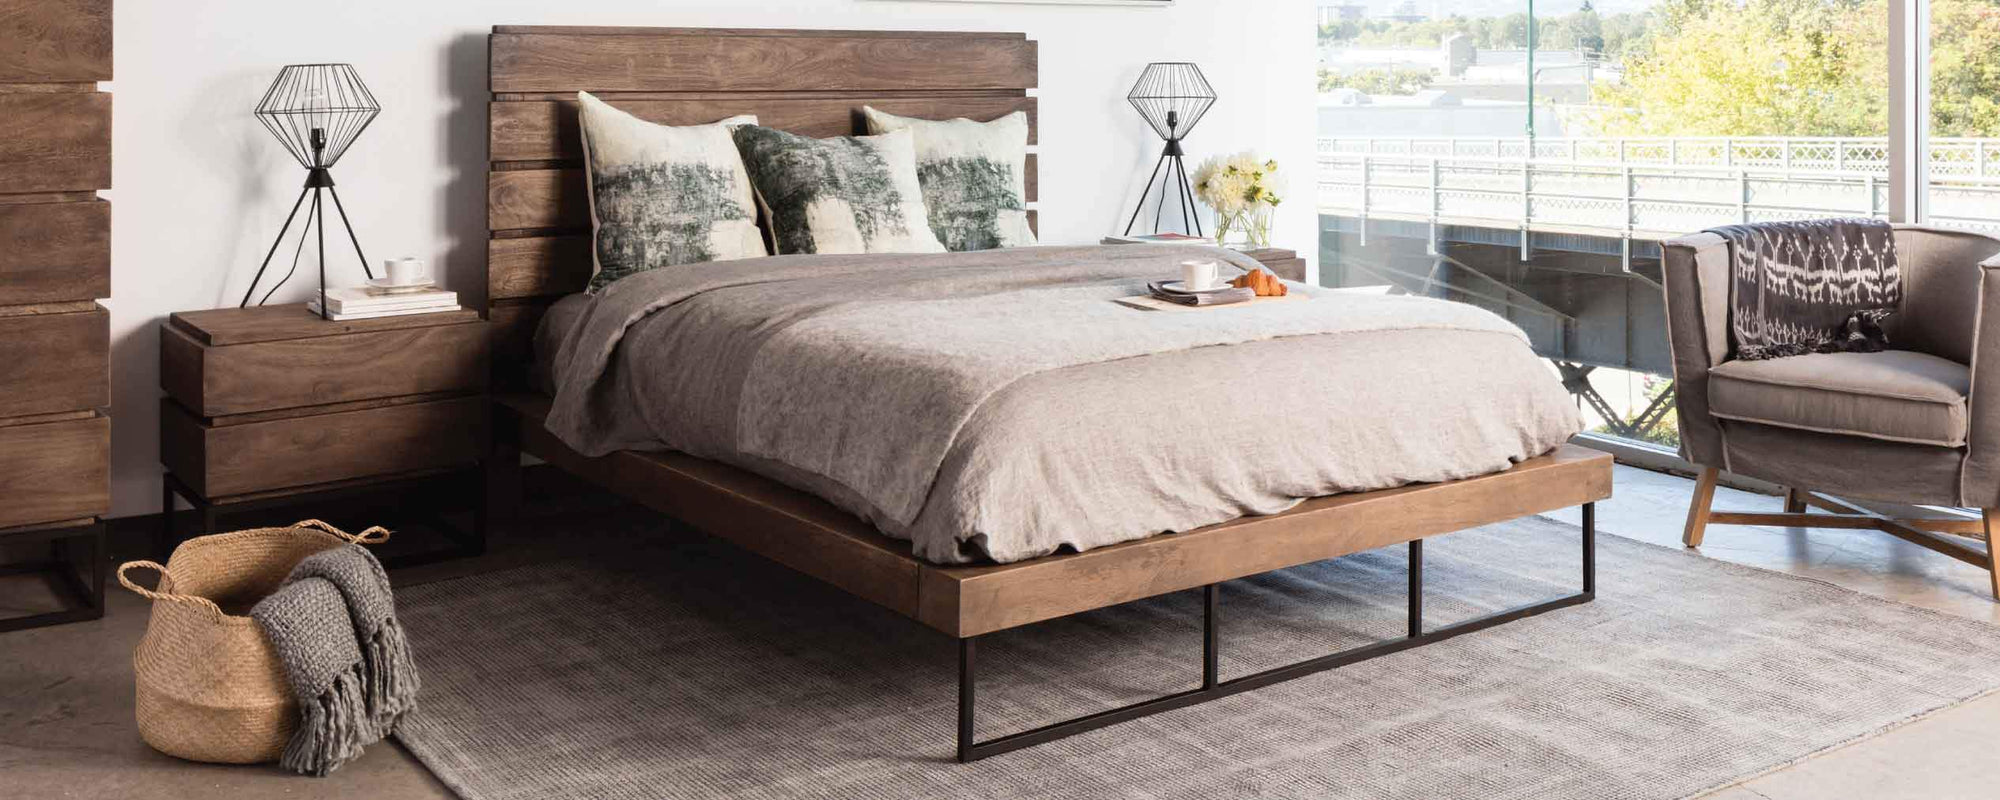 industrial wood bedroom furniture